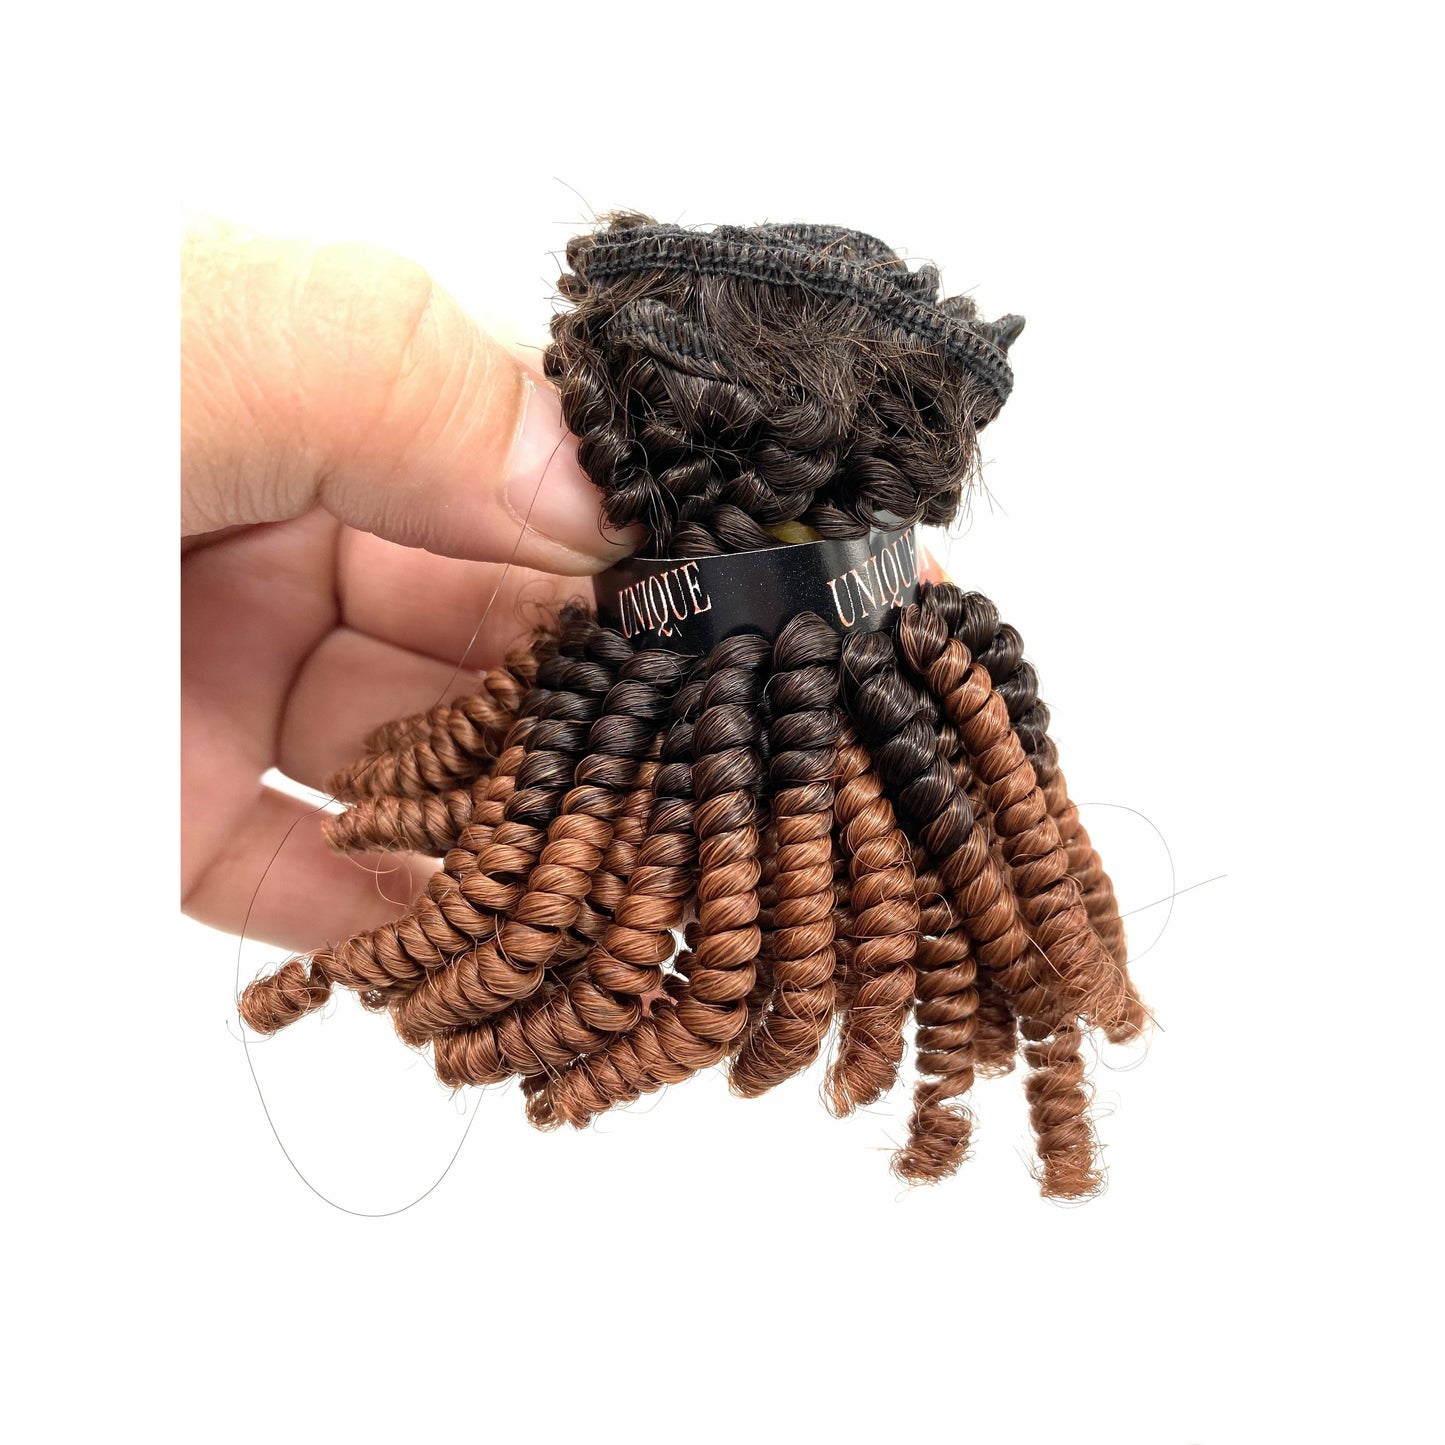 Unique Human Hair Tiny Afro 4 piece set